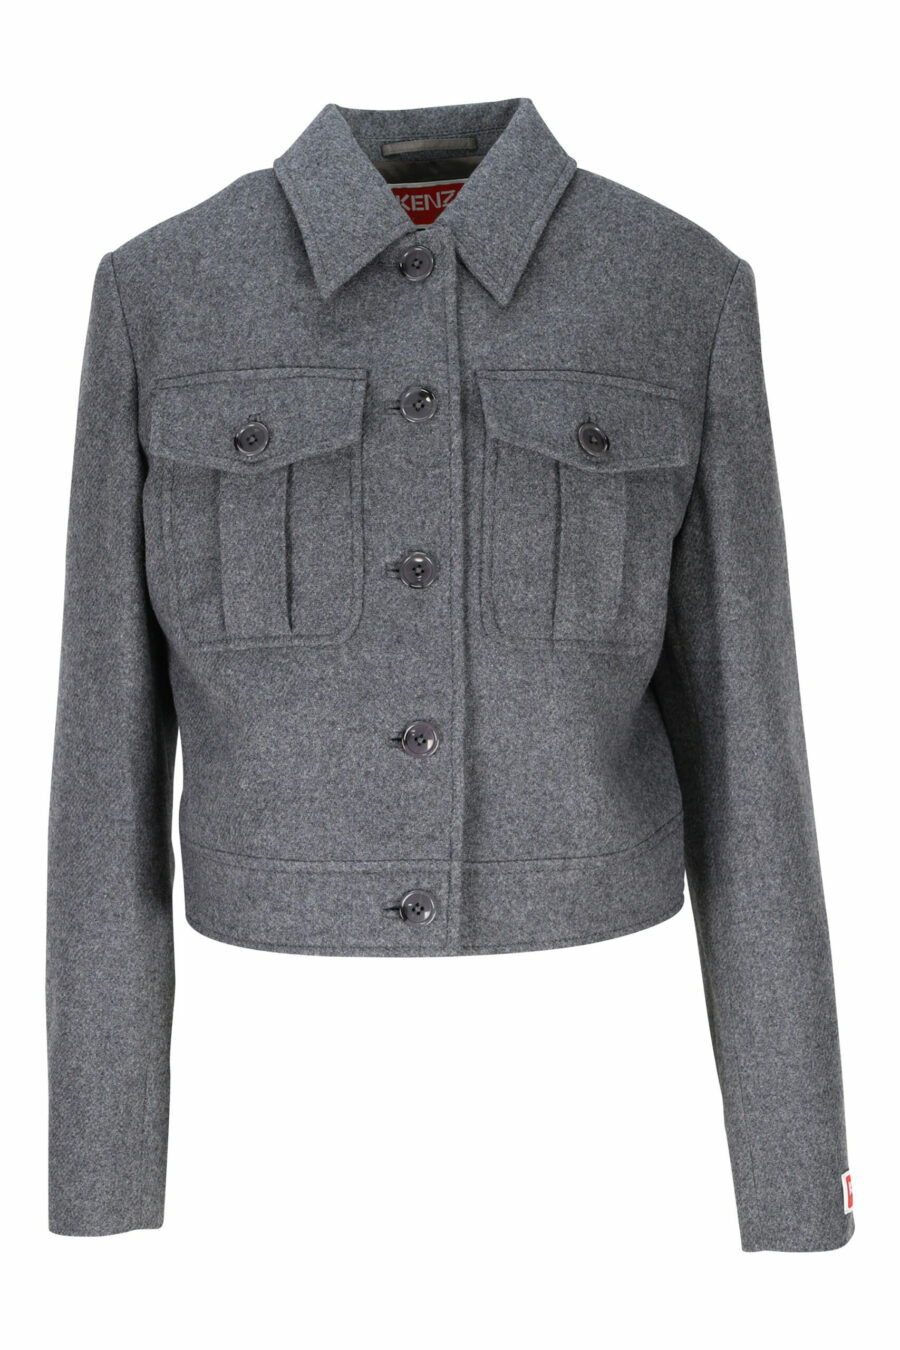 Grey jacket with mini-logo on sleeve - 3612230490567 scaled